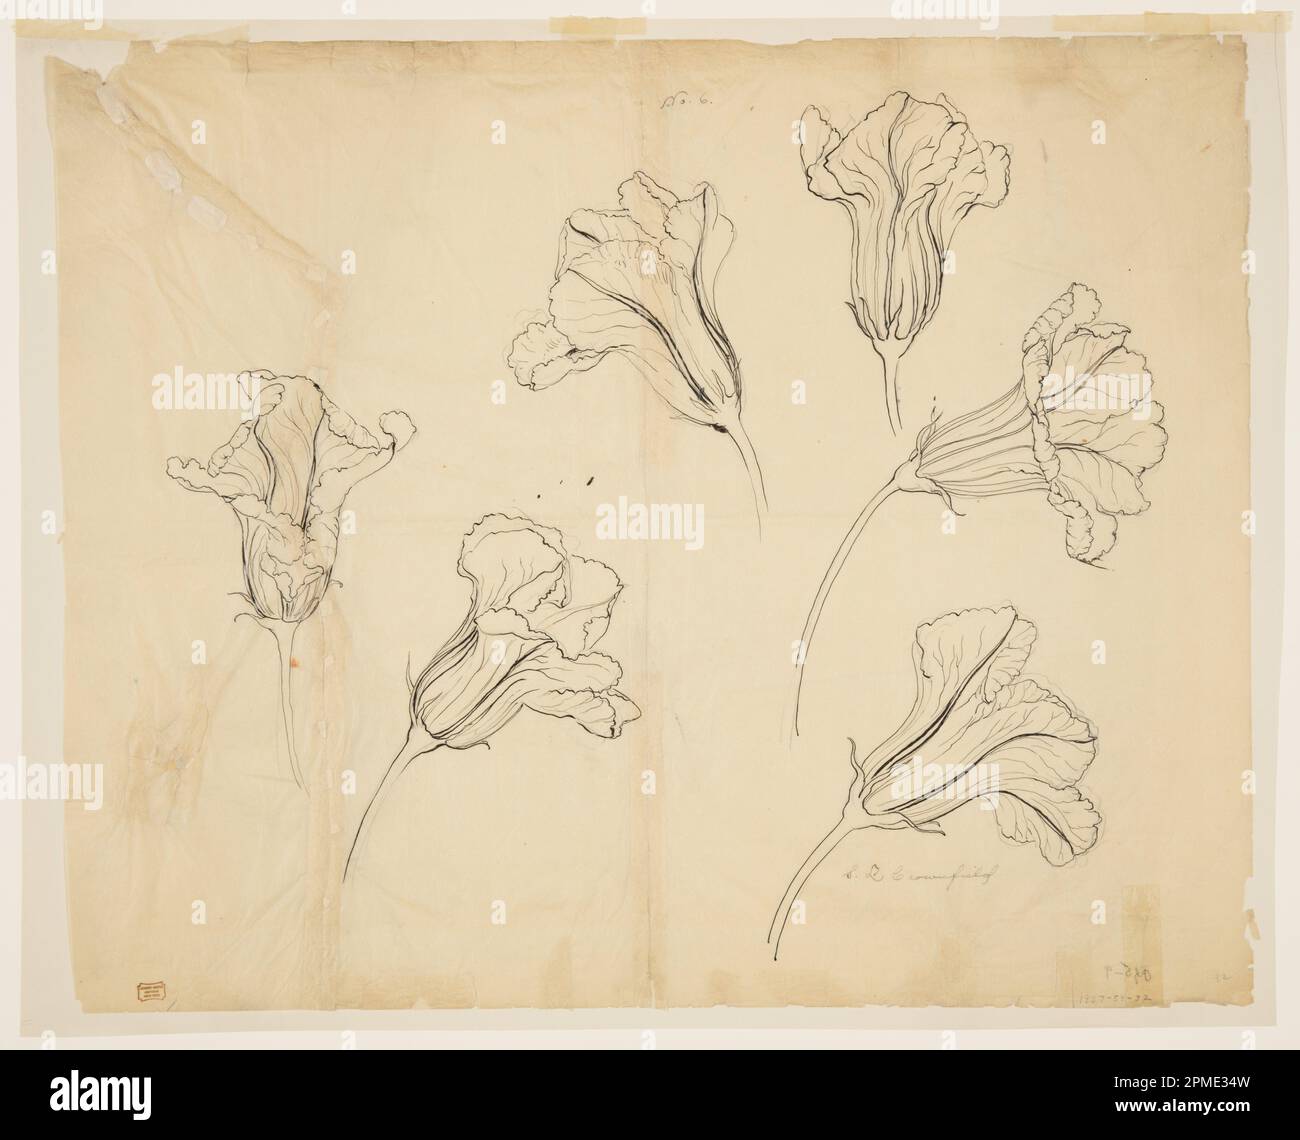 Disegni, studi sui fiori di zucca o squash; Sophia L. Crownfield (americano, 1862–1929); USA; grafite, penna e inchiostro su carta da ricalco posata; 48,3 x 59,2 cm (19 x 23 5/16 pollici) Tappetino: 55,9 x 71,1 cm (22 x 28 pollici) Foto Stock